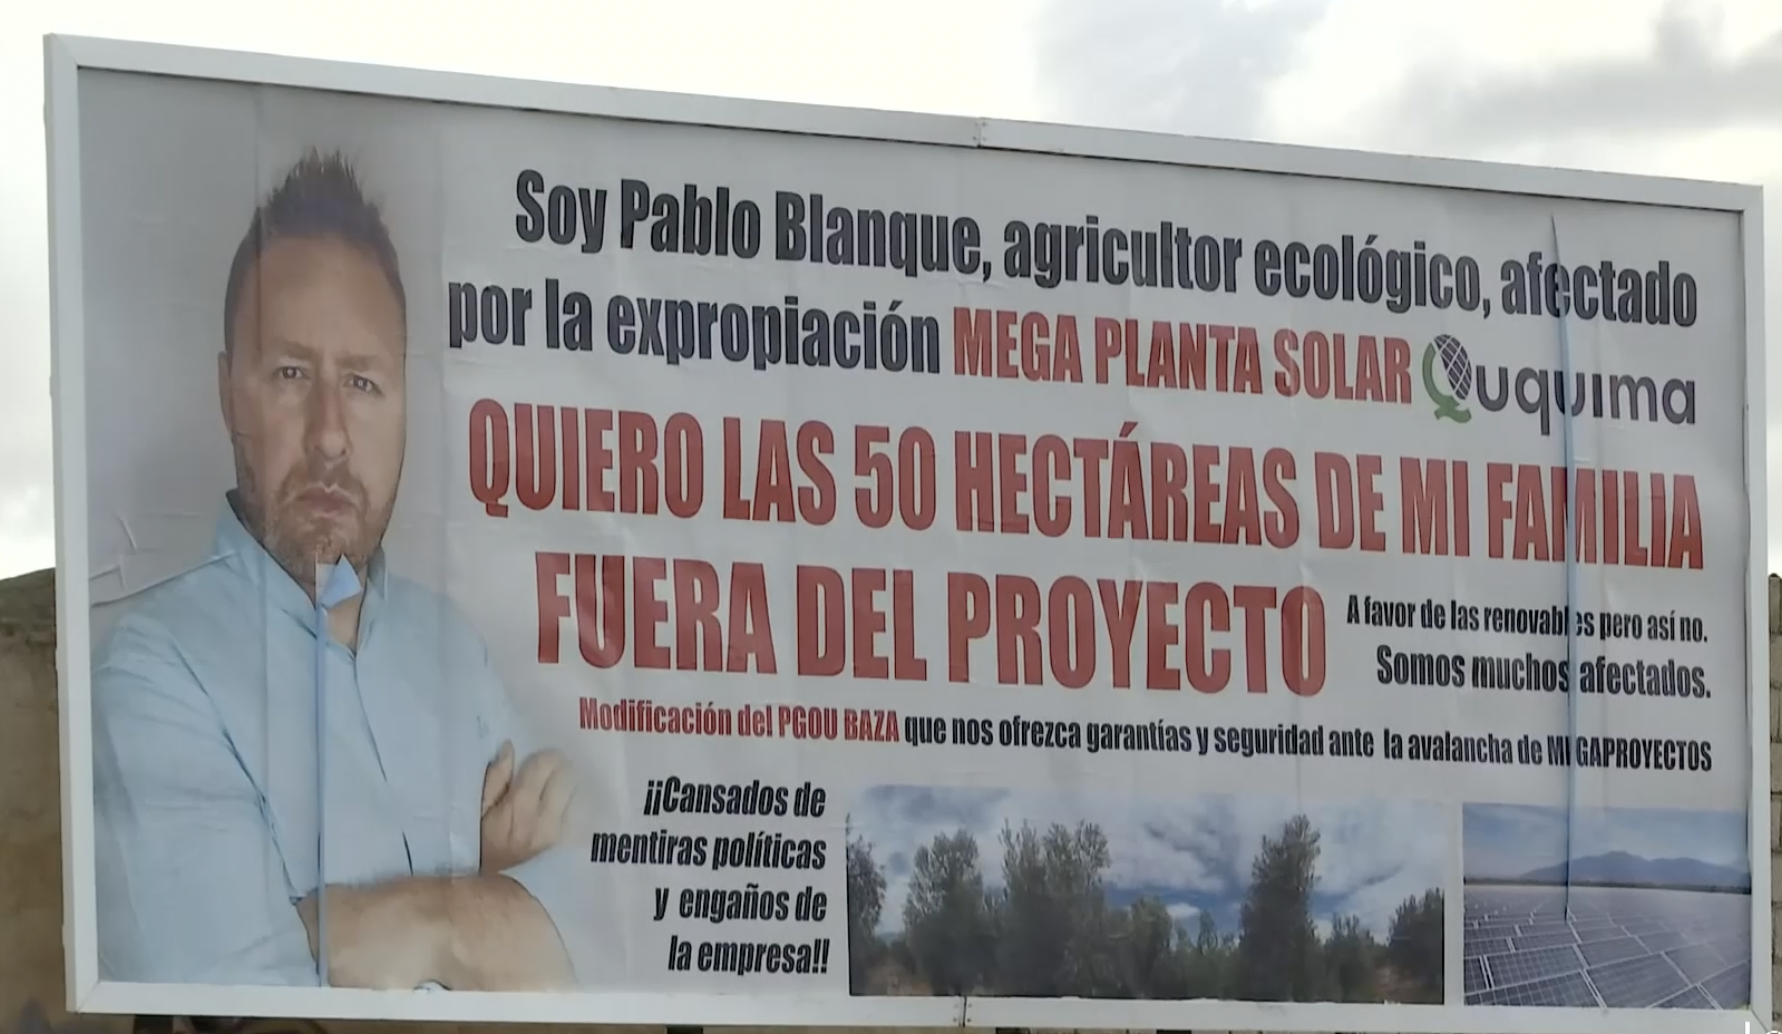 Valla publicitaria pagada por el agricultor Pablo Blanque en Granada. CANALSUR